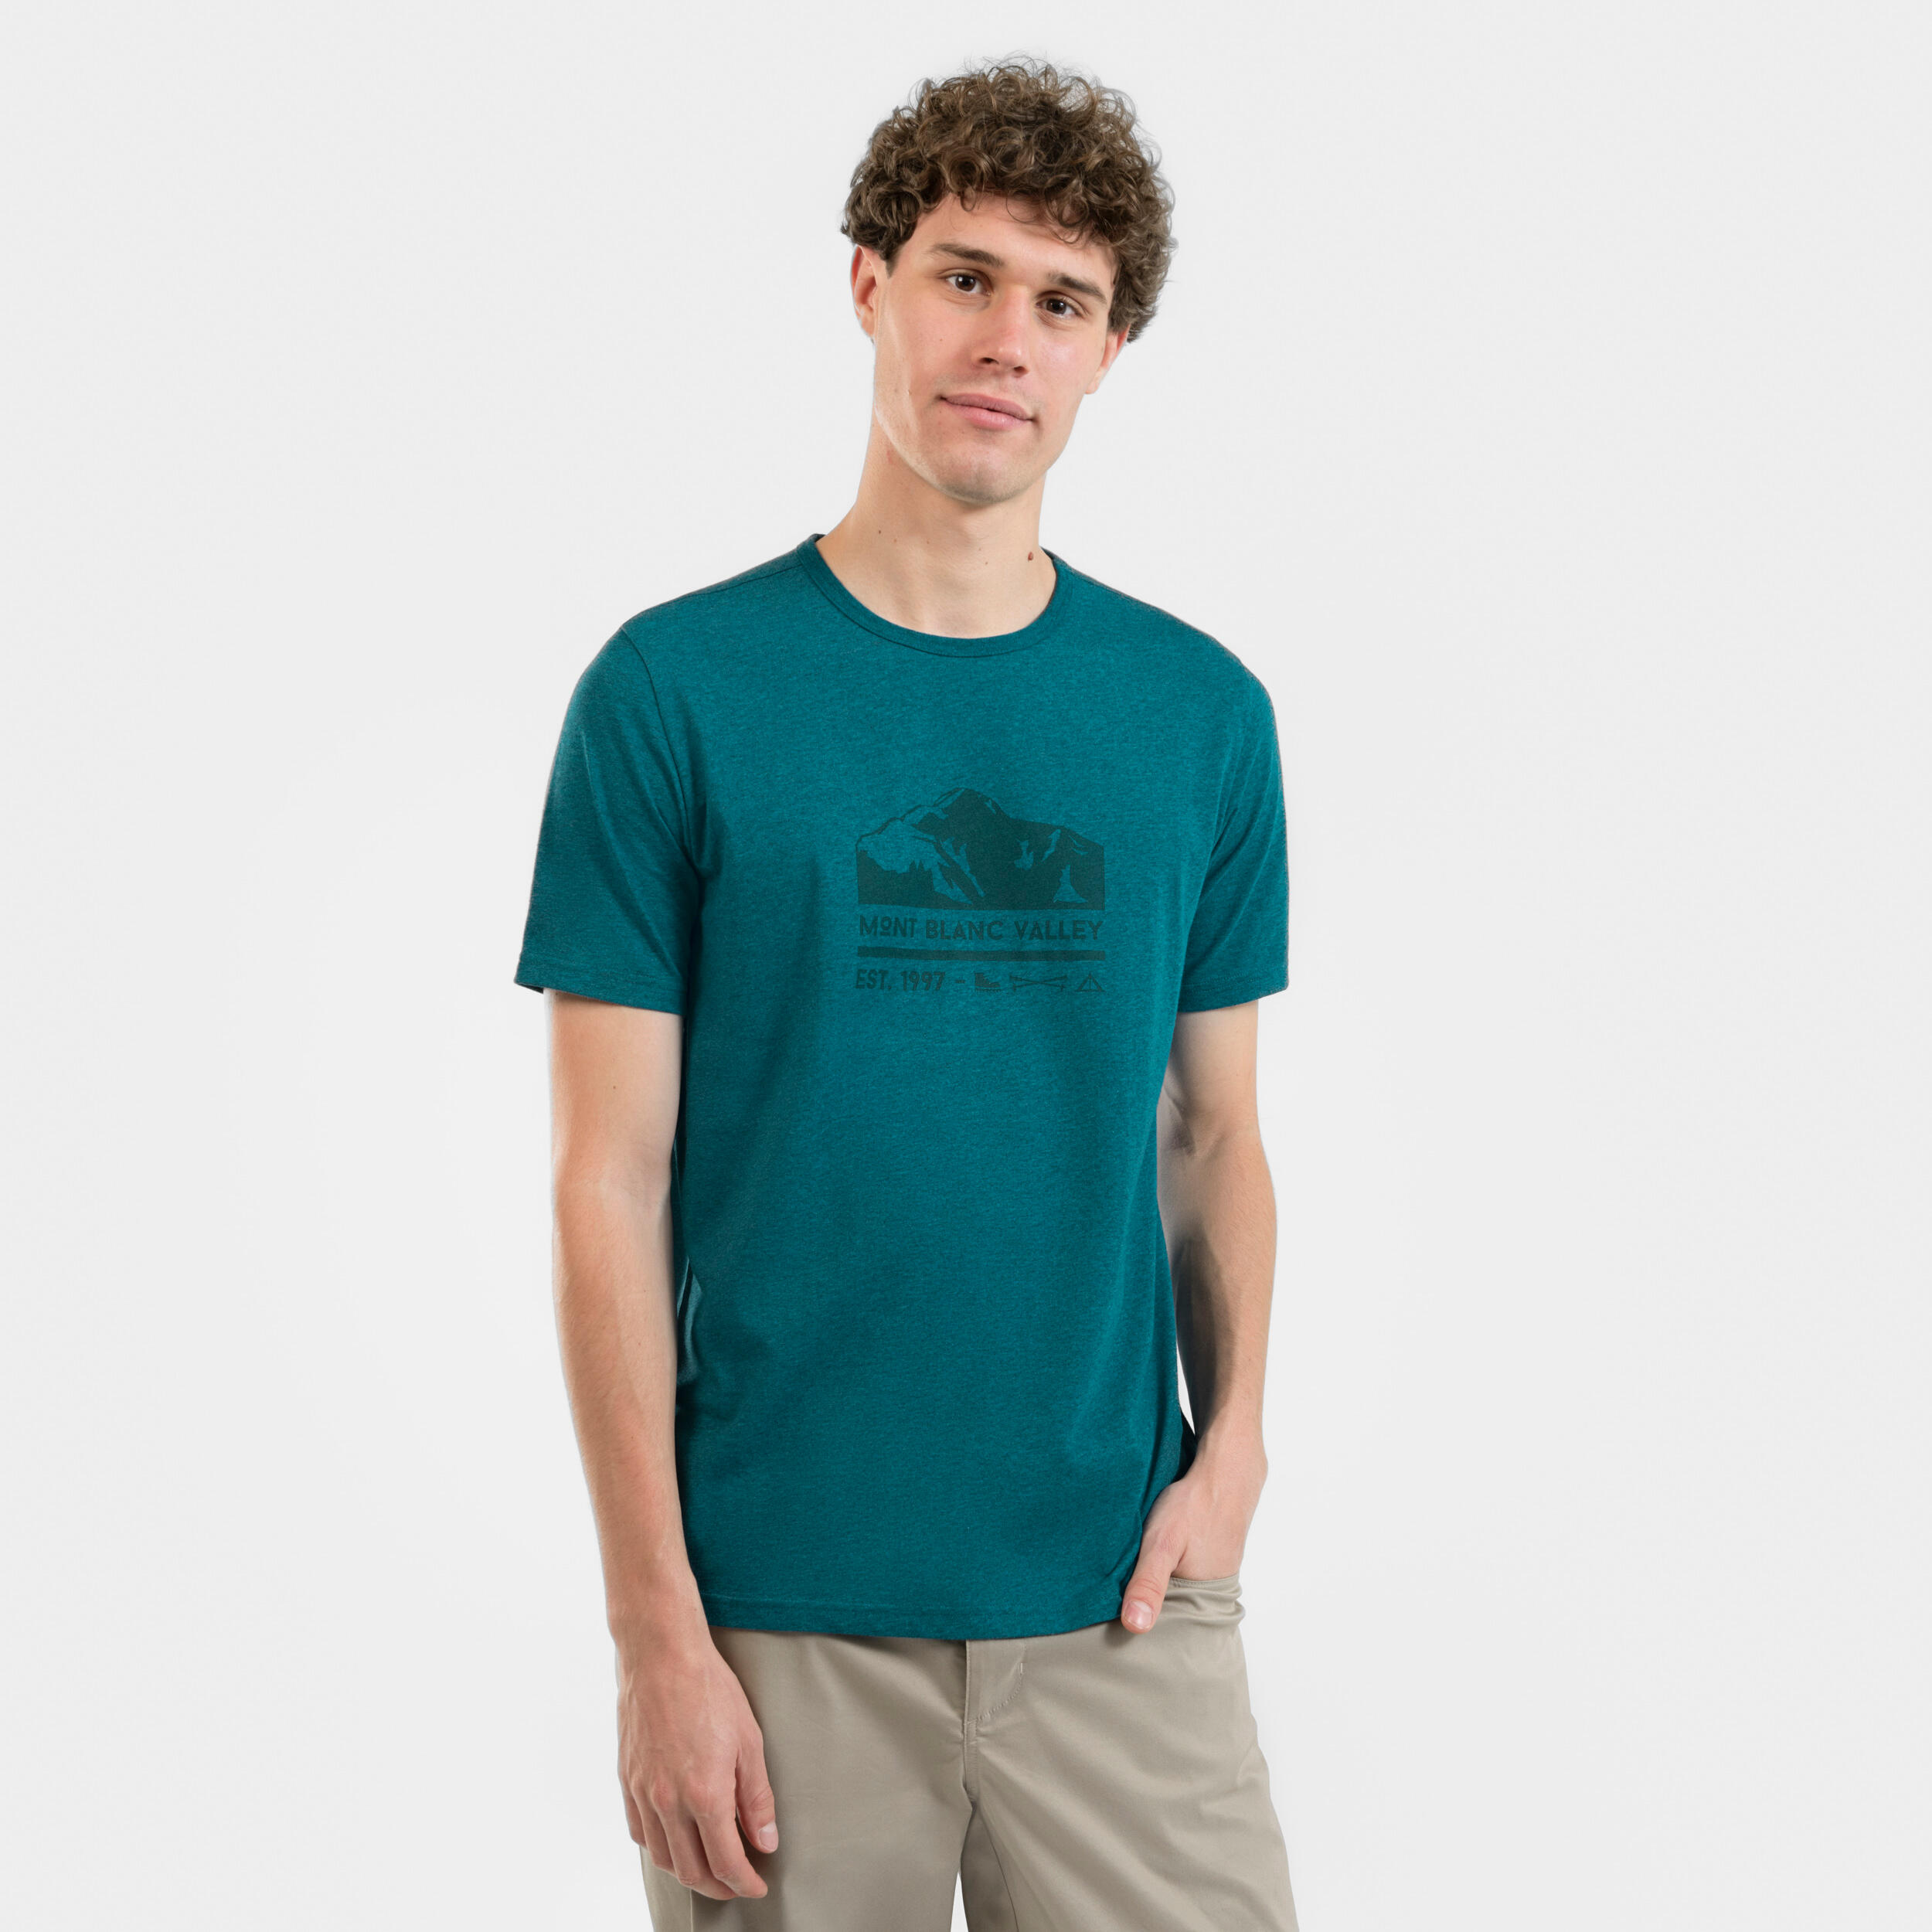 QUECHUA Men's Hiking T-shirt NH100